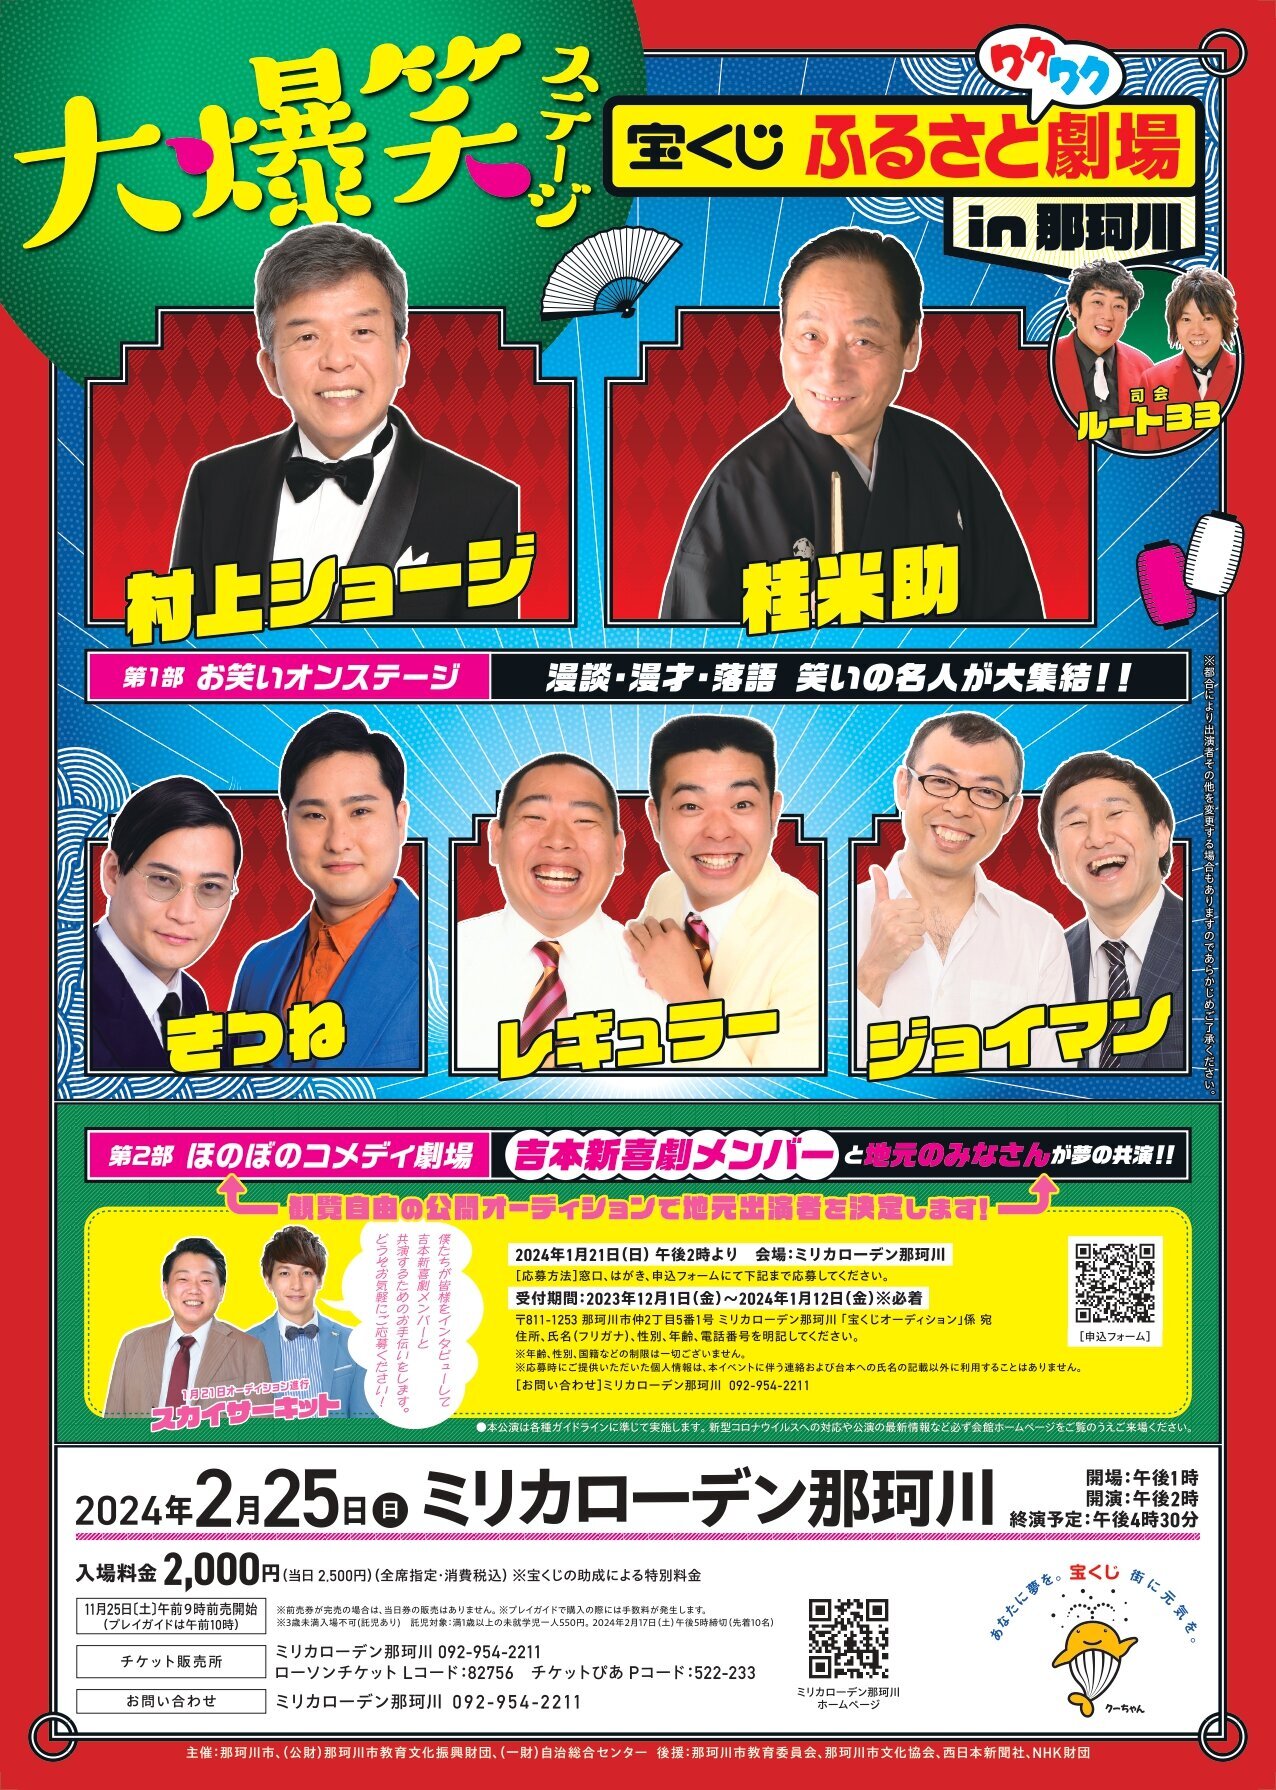 「宝くじふるさとワクワク劇場in那珂川」を開催しました。